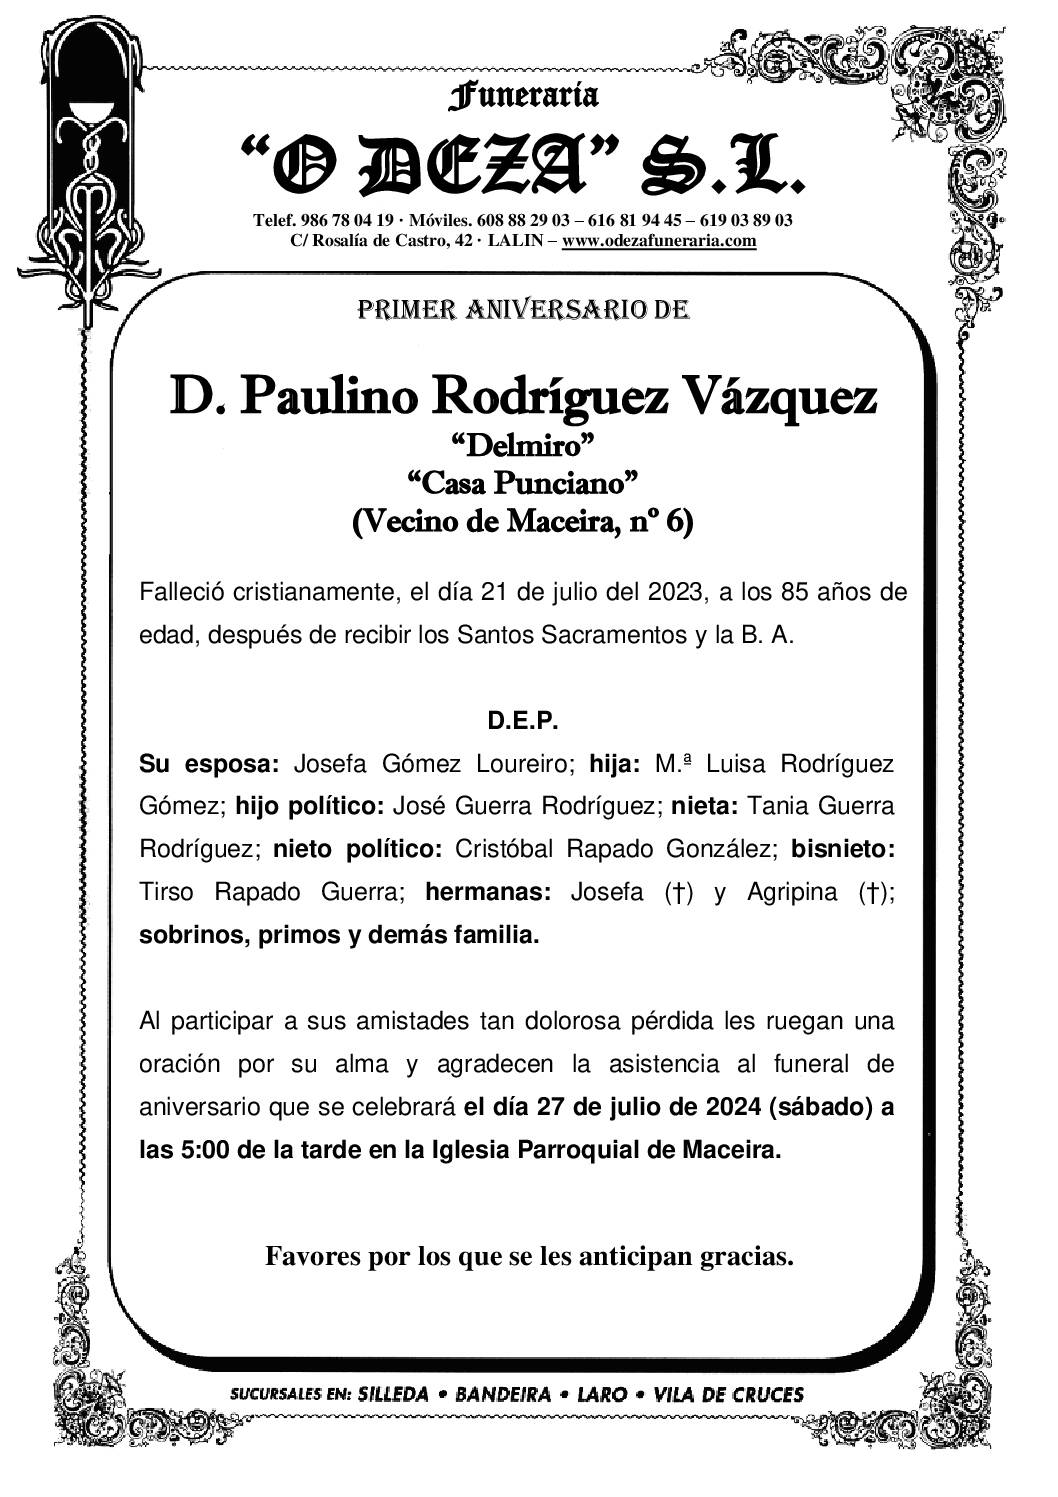 D. PAULINO RODRÍGUEZ VÁZQUEZ